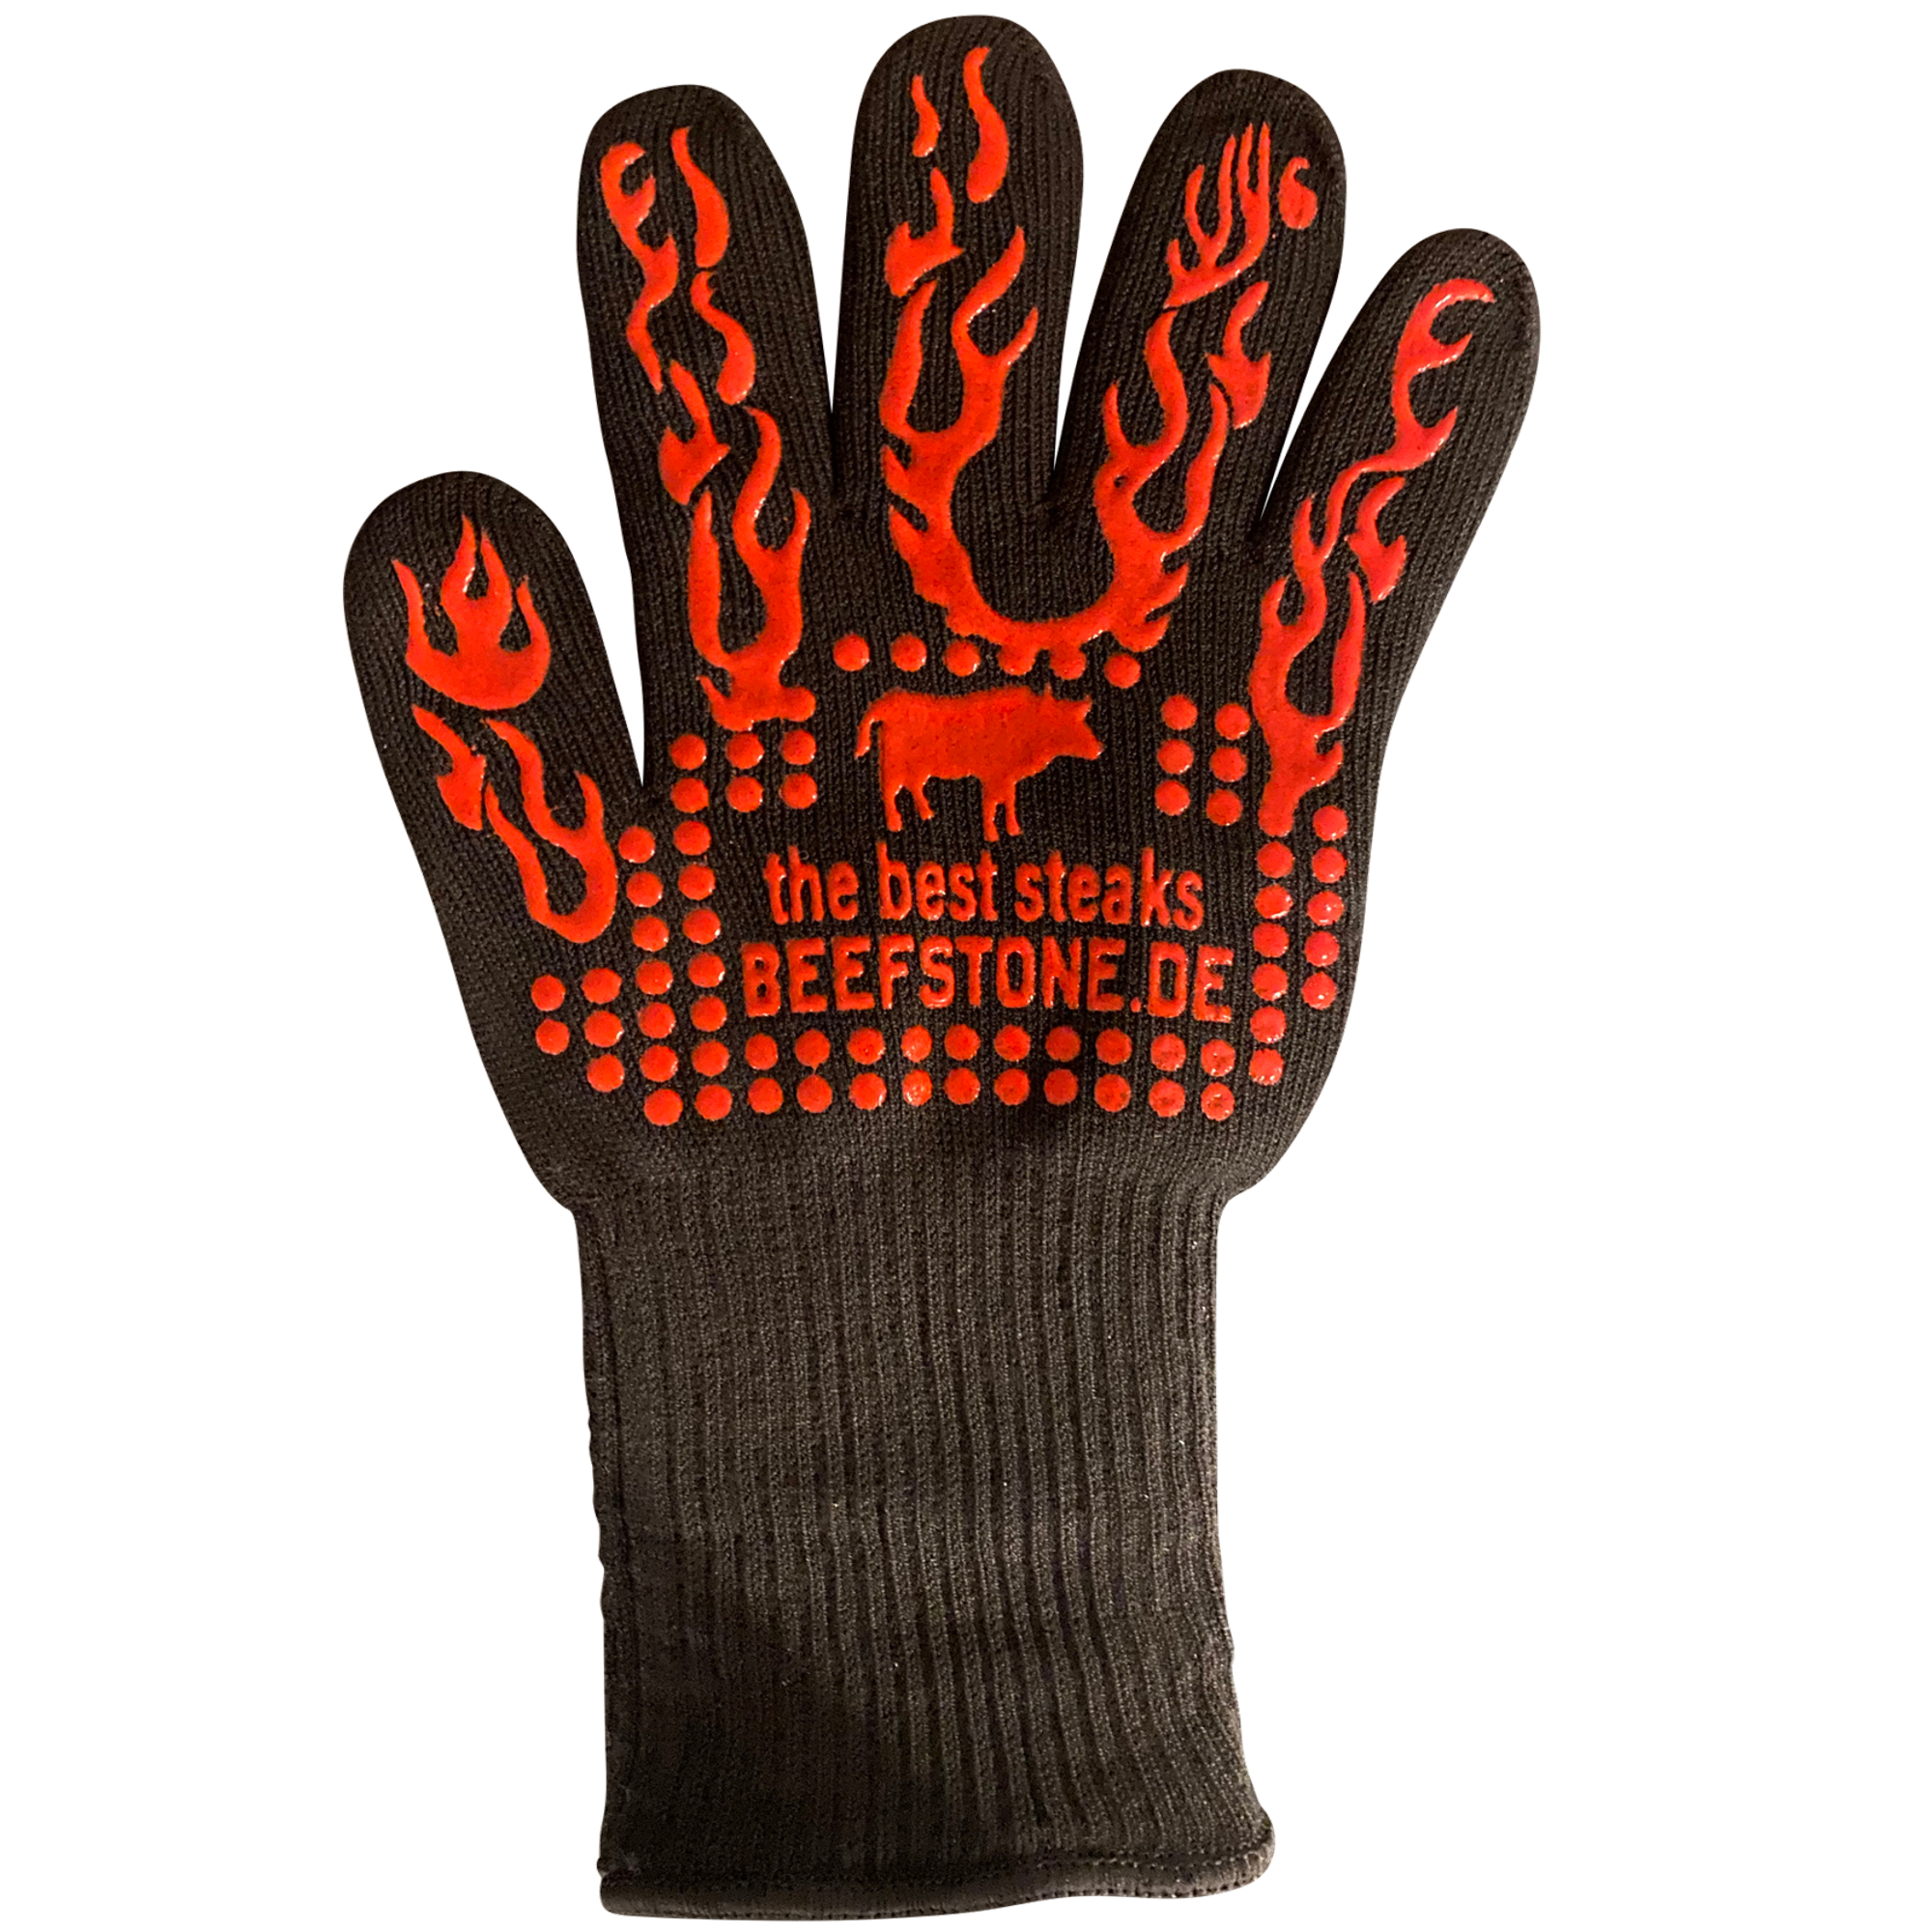 Feuerfeste Handschuhe BBQ - Grillhandschuhe by Beefstone - bis 450°C hitzebeständig